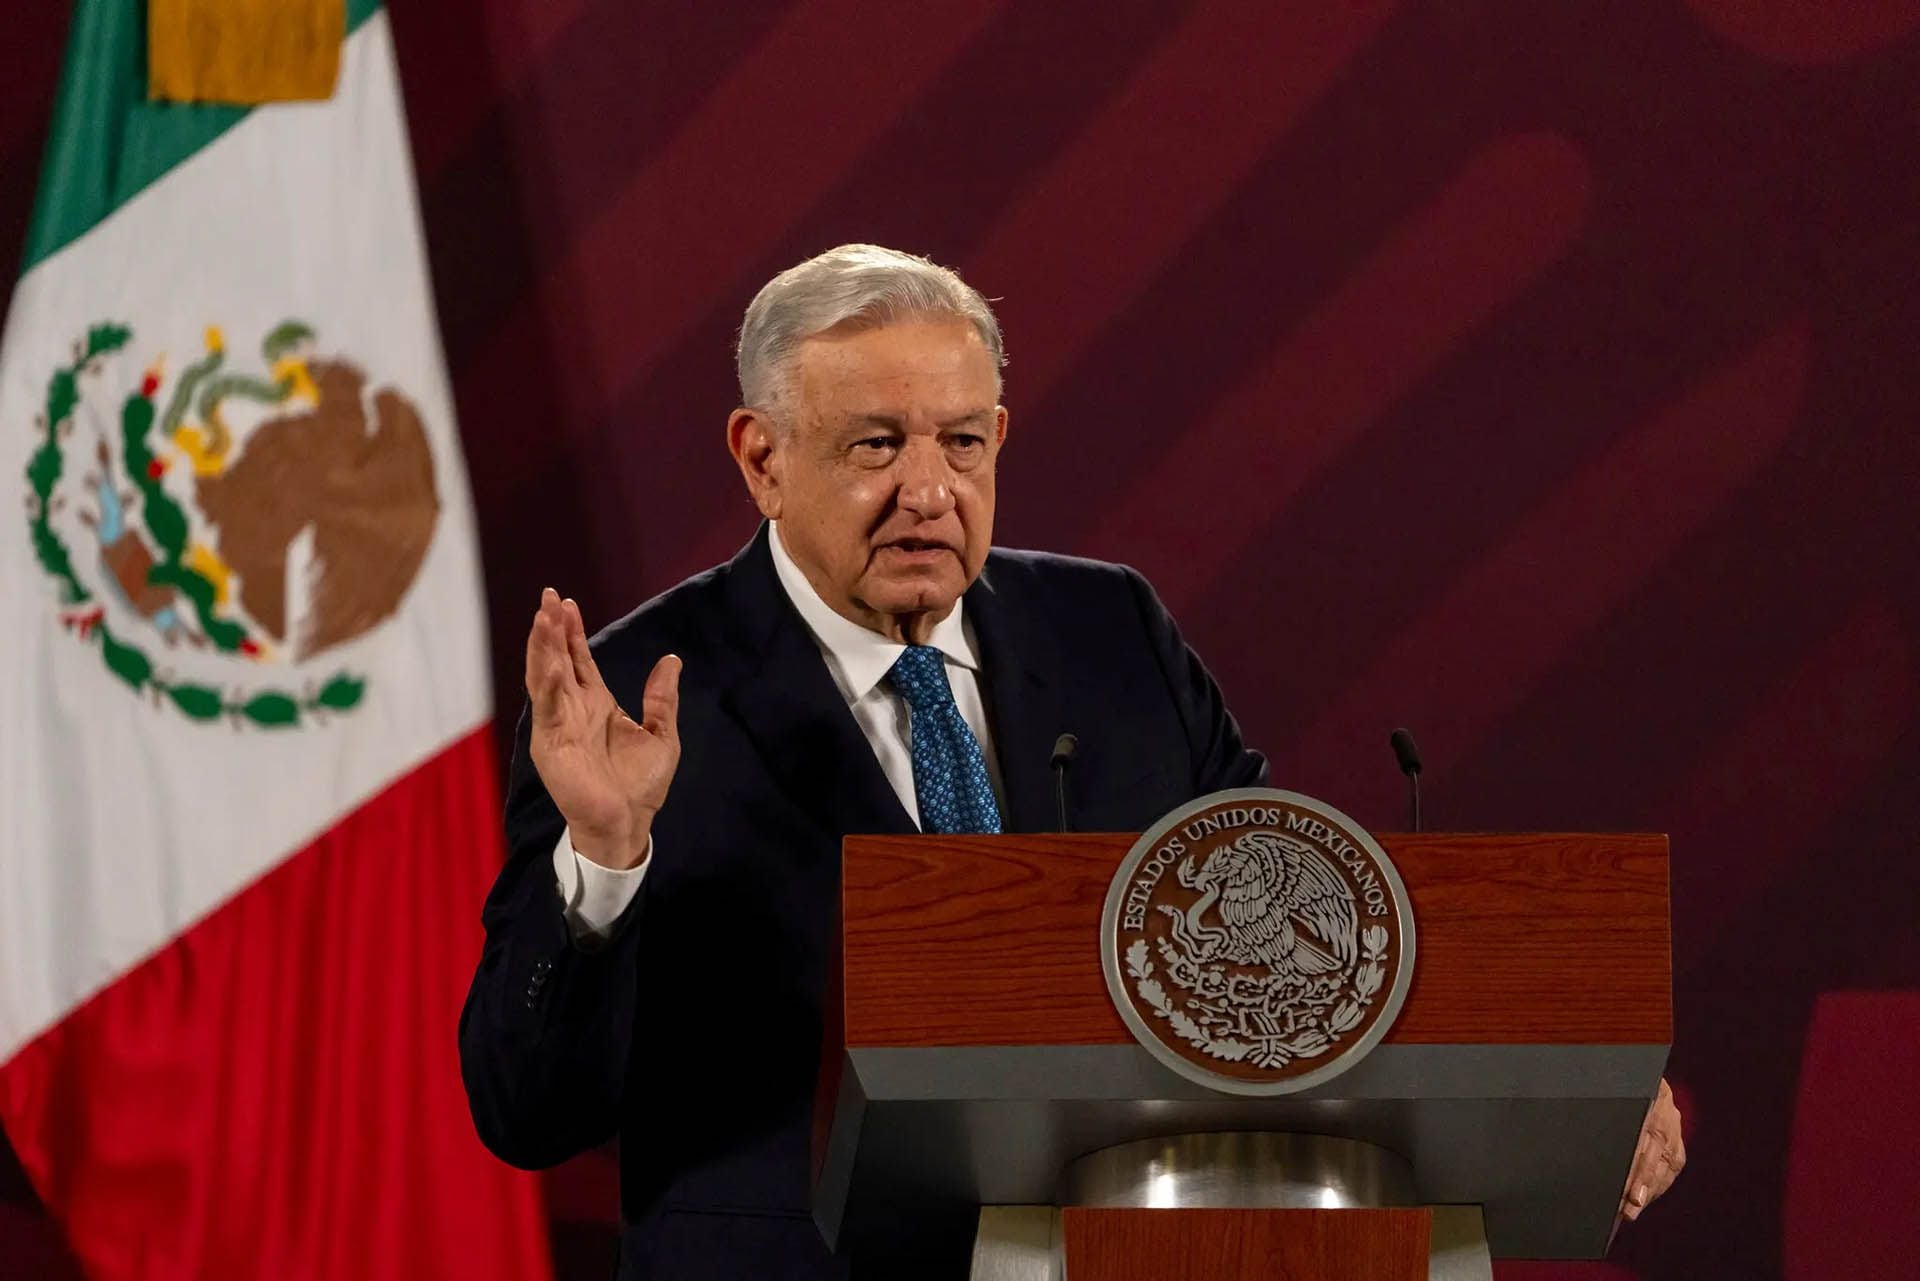 El presidente Andrés Manuel López Obrador solo puede gobernar durante un sexenio según la Constitución (Alejandro Cegarra para The New York Times)